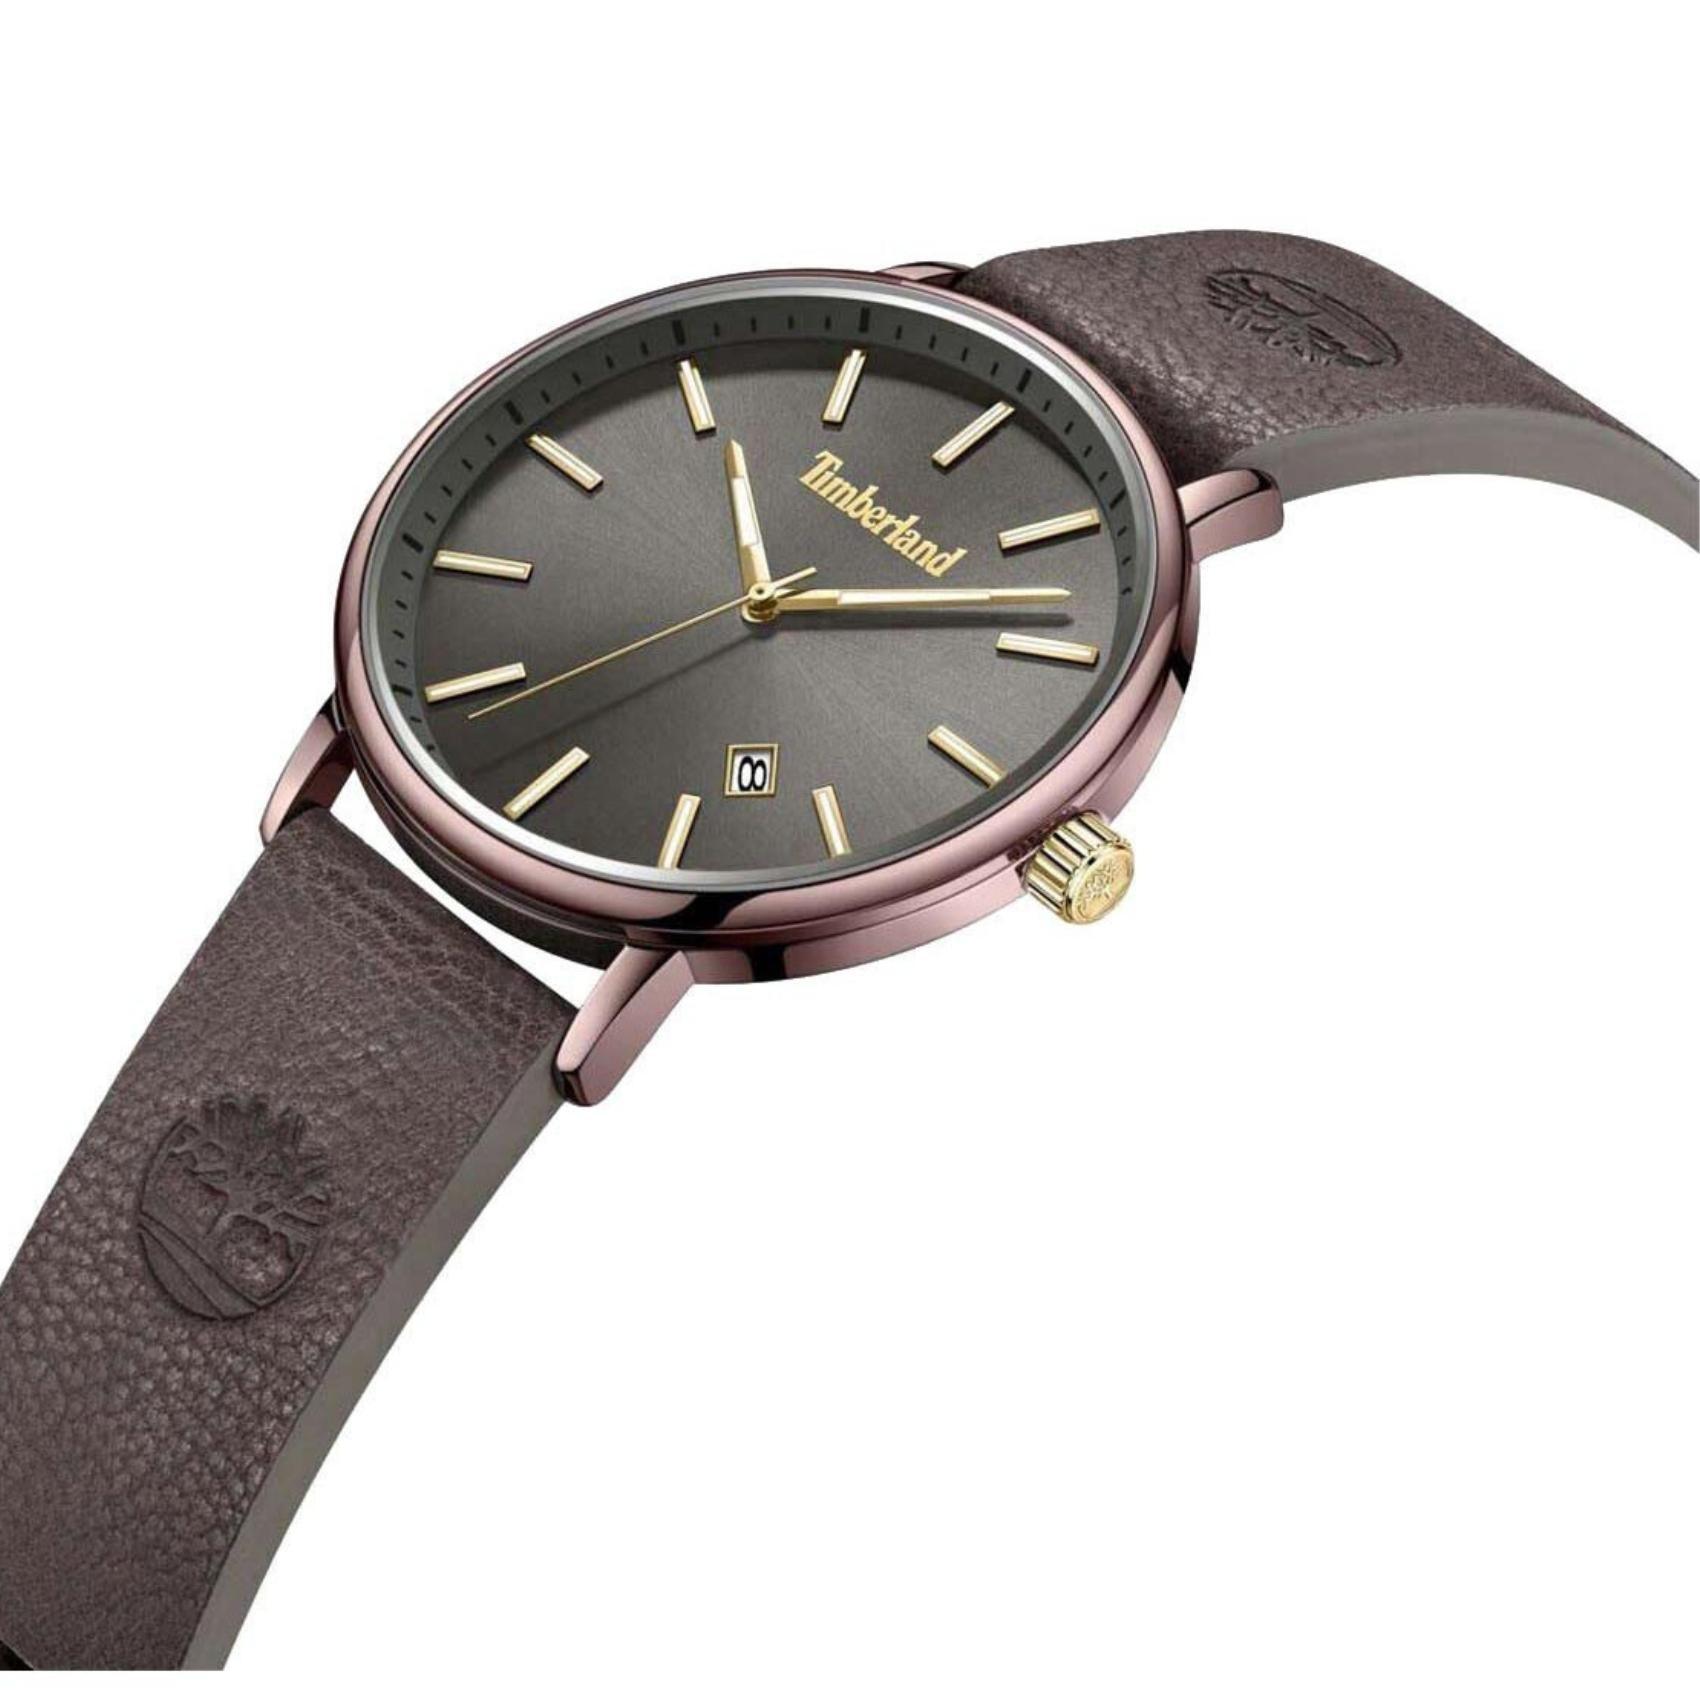 Αντρικό ρολόι Timberland Spencer TDWGB2182803 με καφέ δερμάτινο λουράκι και καφέ καντράν διαμέτρου 42mm με ημερομηνία.